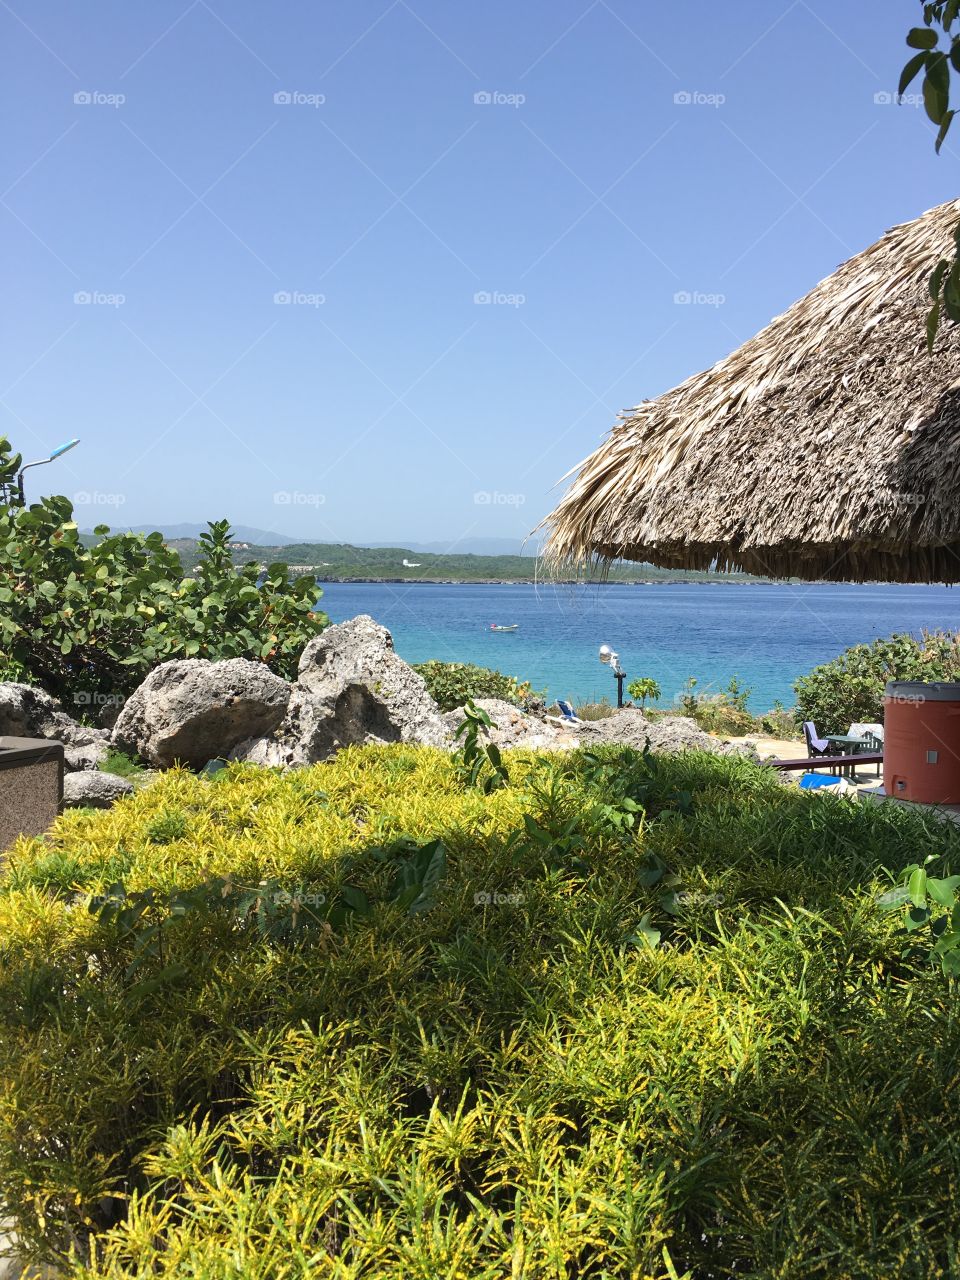 Sosua Resort in the Dominican Republic